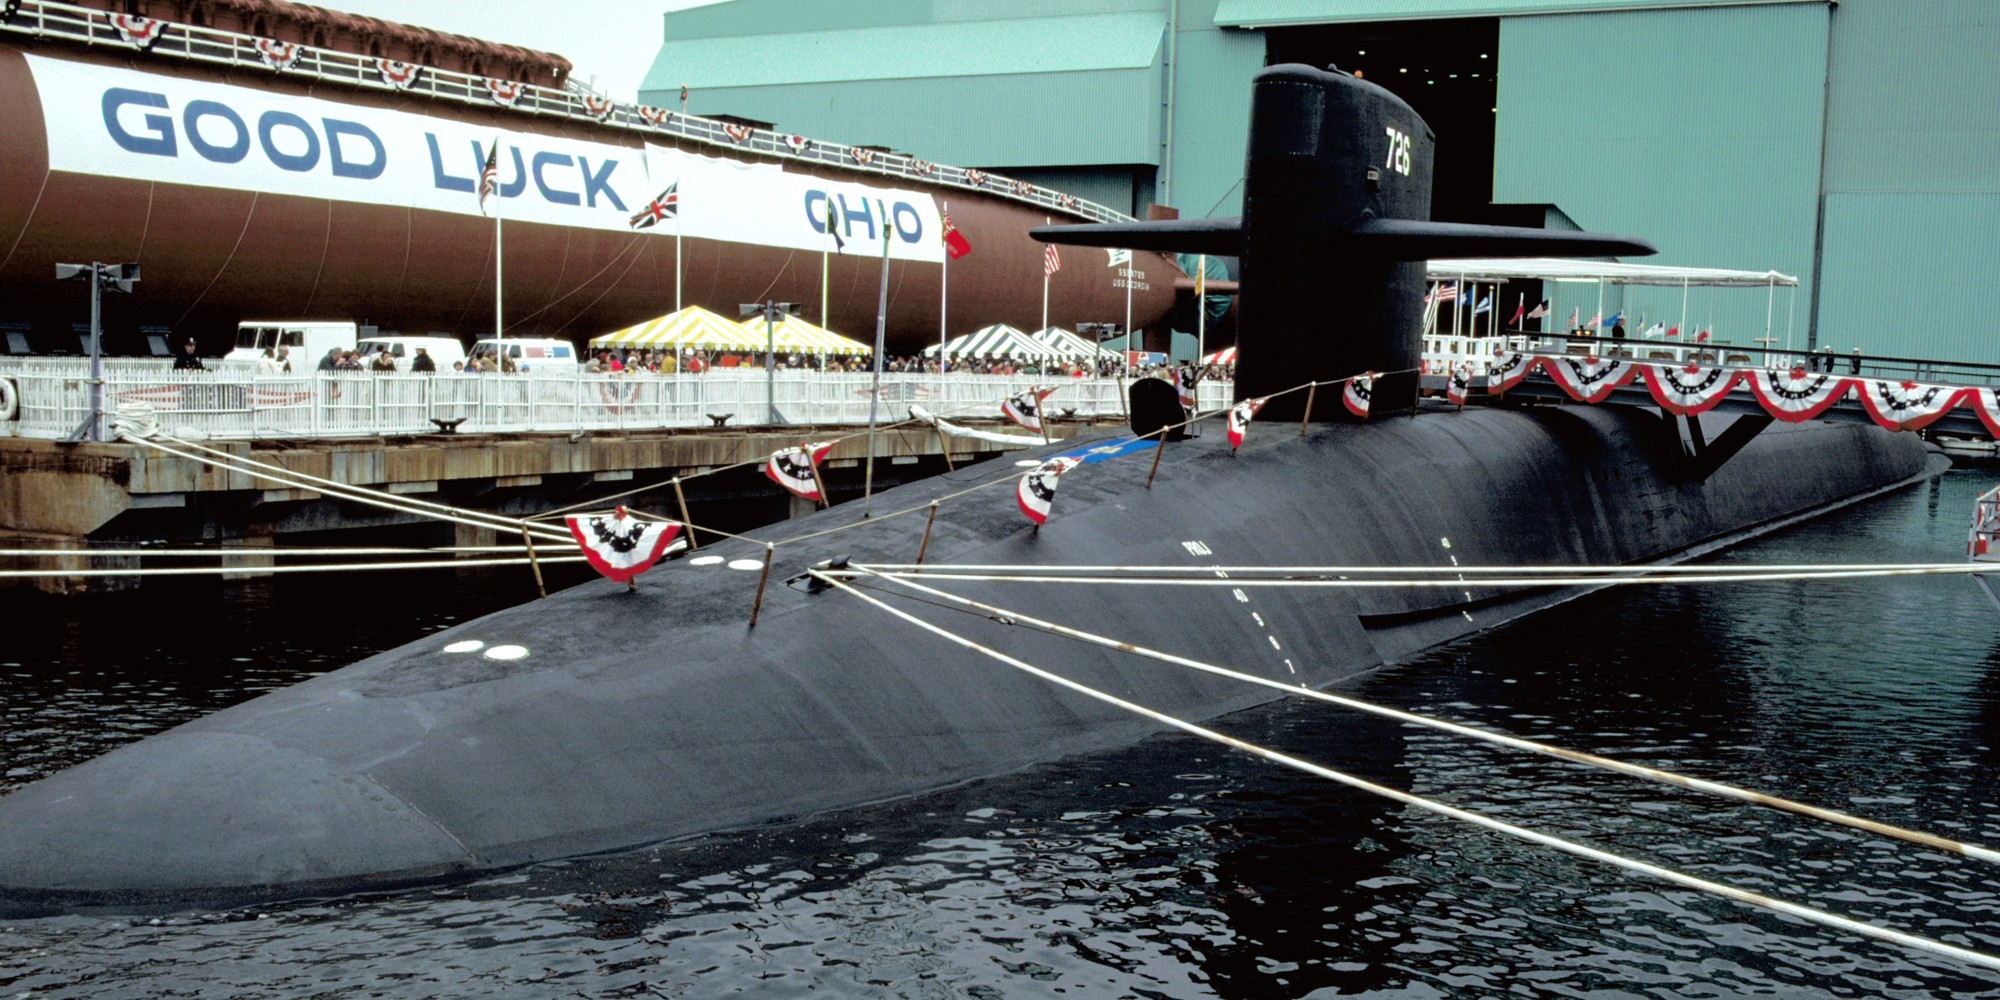 ssbn-726 uss ohio ballistic missile submarine us navy 1981 84 commissioning ceremony